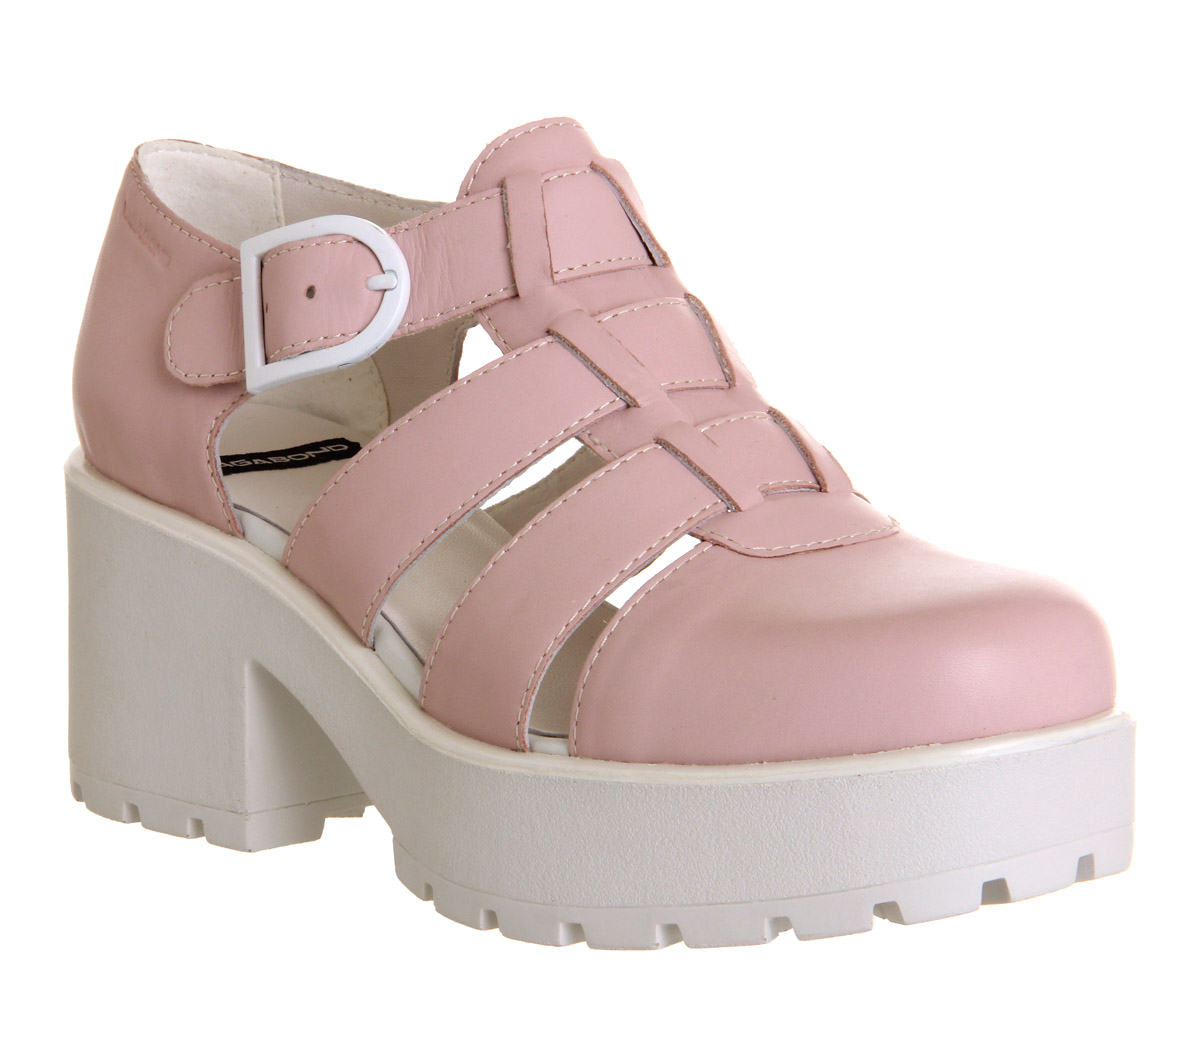 Vagabond ShoemakersDioon Closed Toe SandalMilkshake Pink Leather